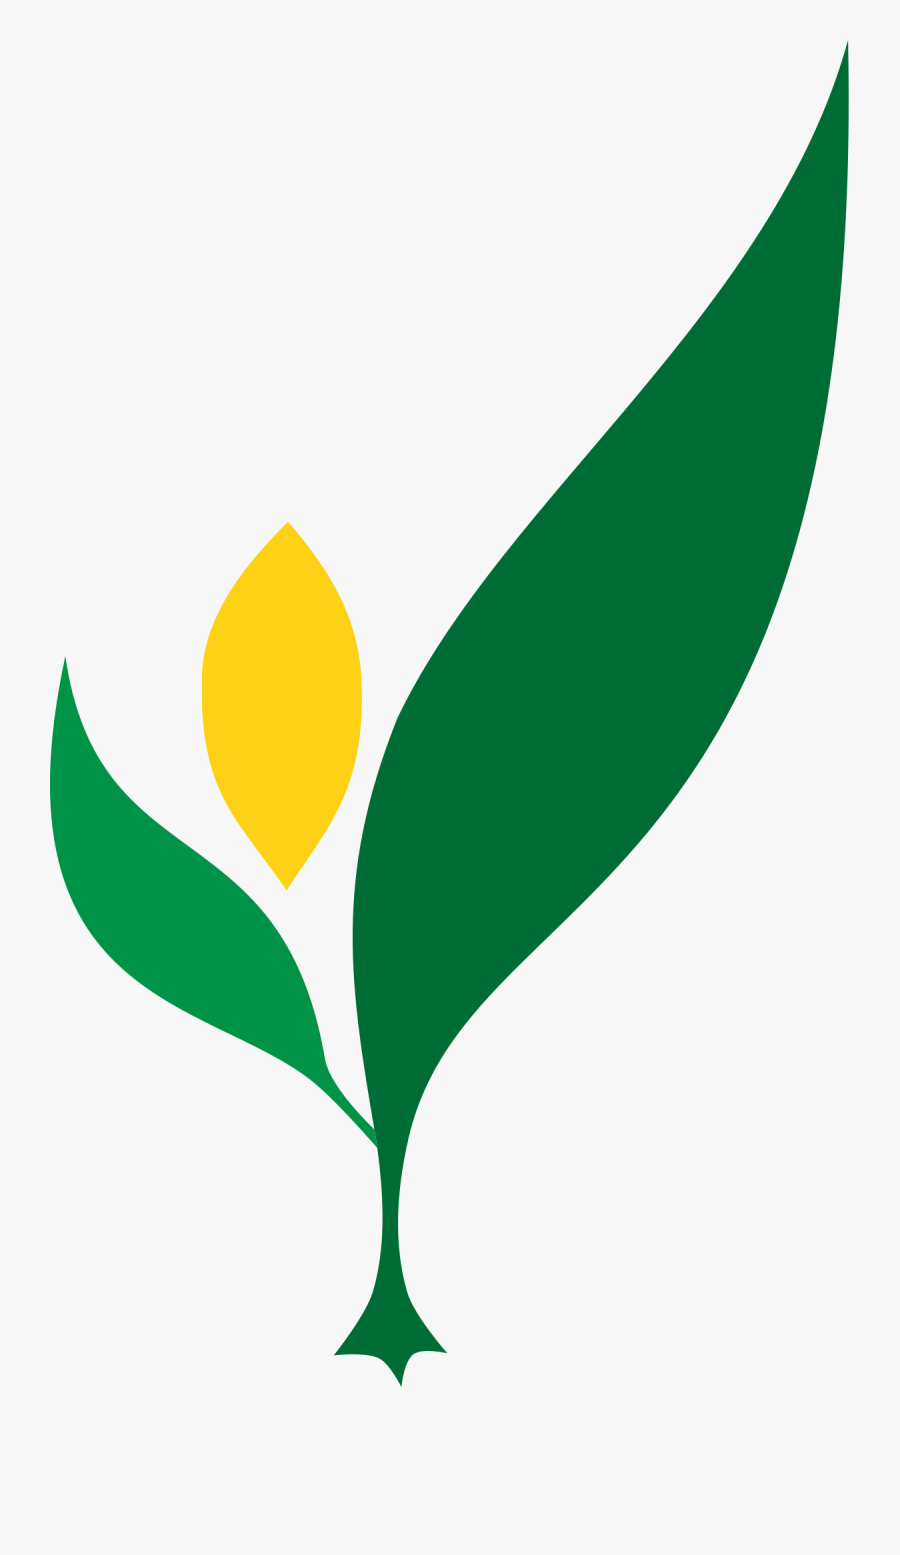 Bureau Of Plant Industry Logo, Transparent Clipart